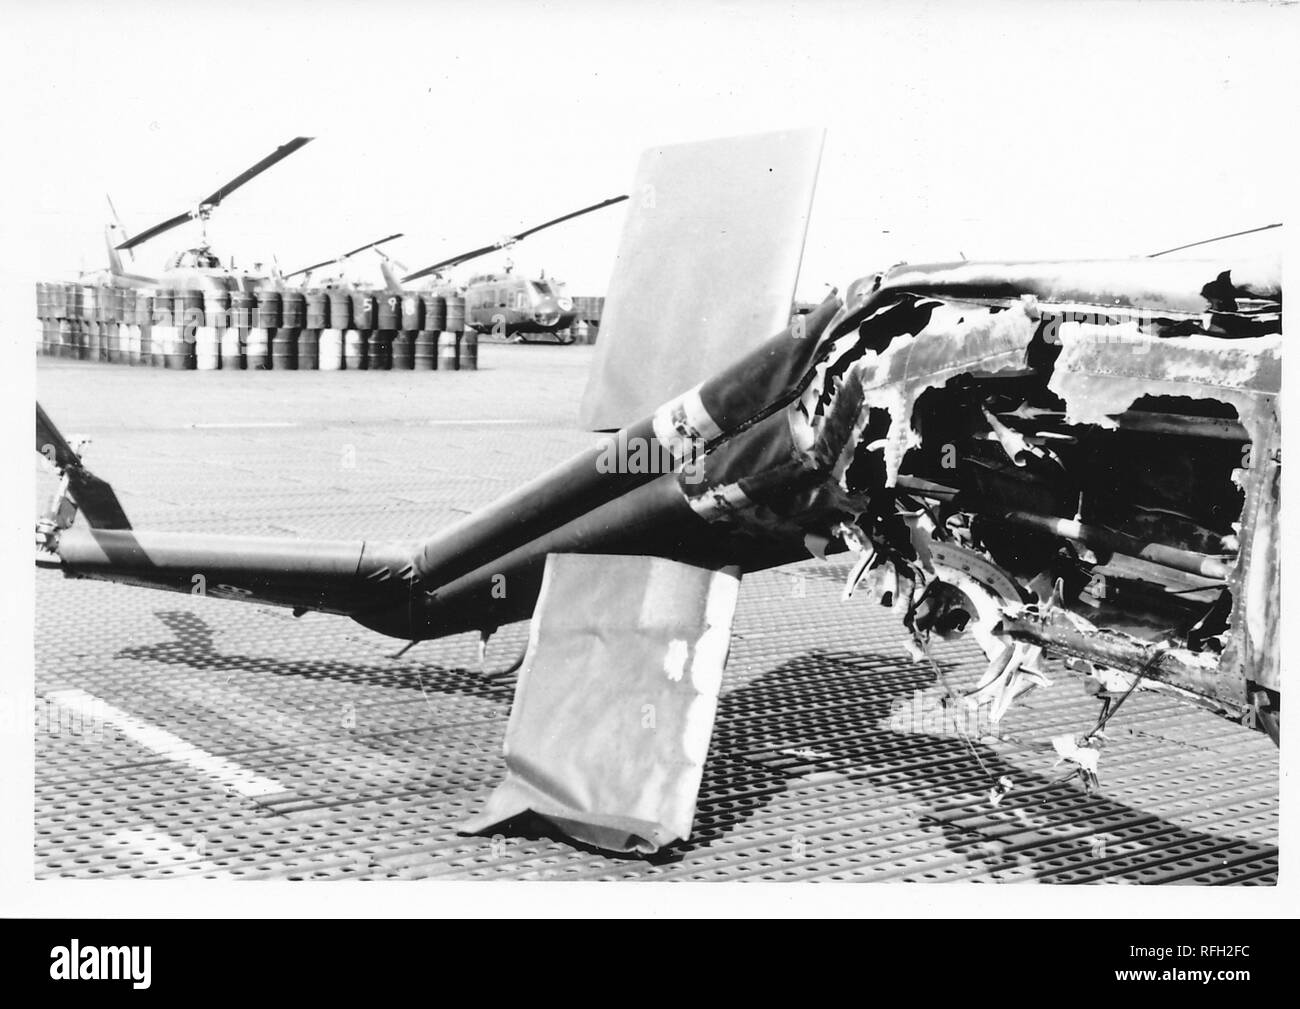 Fotografia in bianco e nero, mostrando la pesantemente danneggiata tail boom e montaggio motore sezione di un elicottero militare, è probabile che un Bell UH-1 Iroquois ("Huey') con botti e più elicotteri visibile sullo sfondo, fotografato durante la Guerra del Vietnam, 1968. () Foto Stock